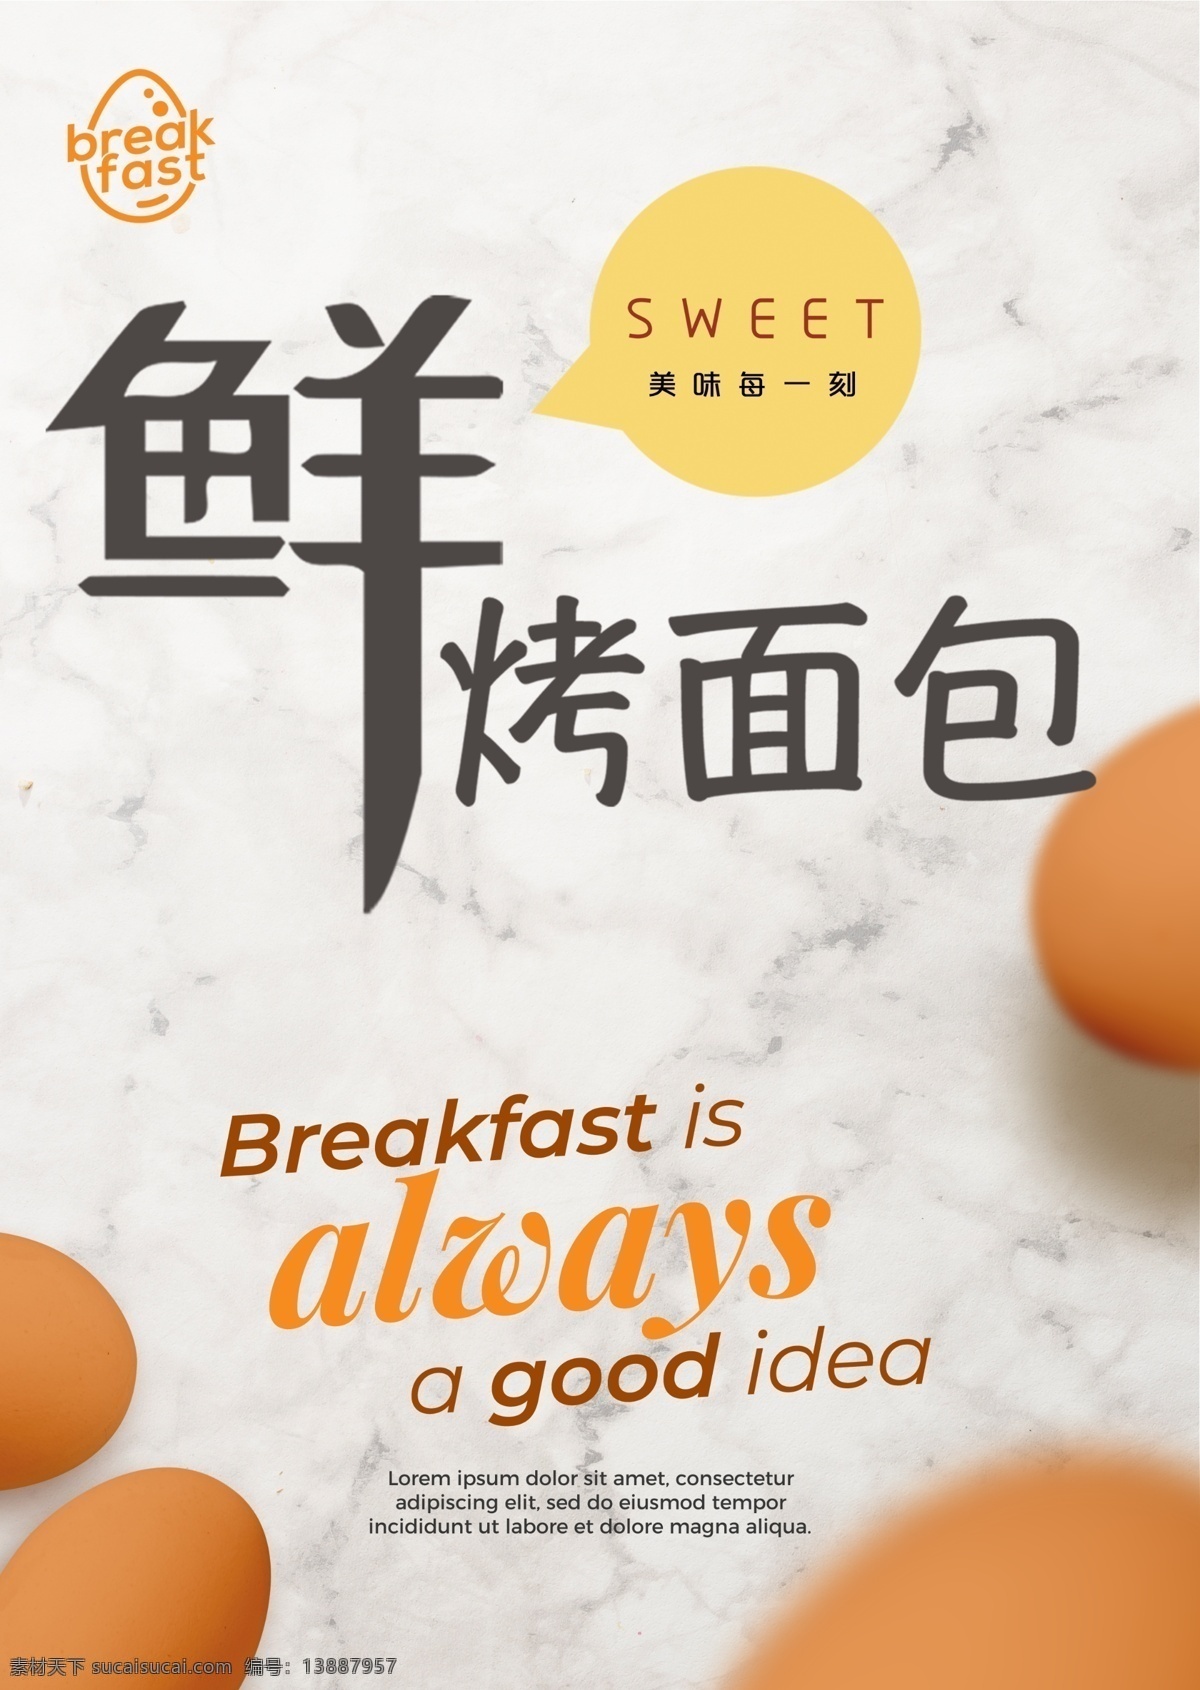 早餐海报图片 早餐 早餐海报 早餐展板 展板 平面设计 写真 早餐烤面包 鸡蛋 饭店 展架